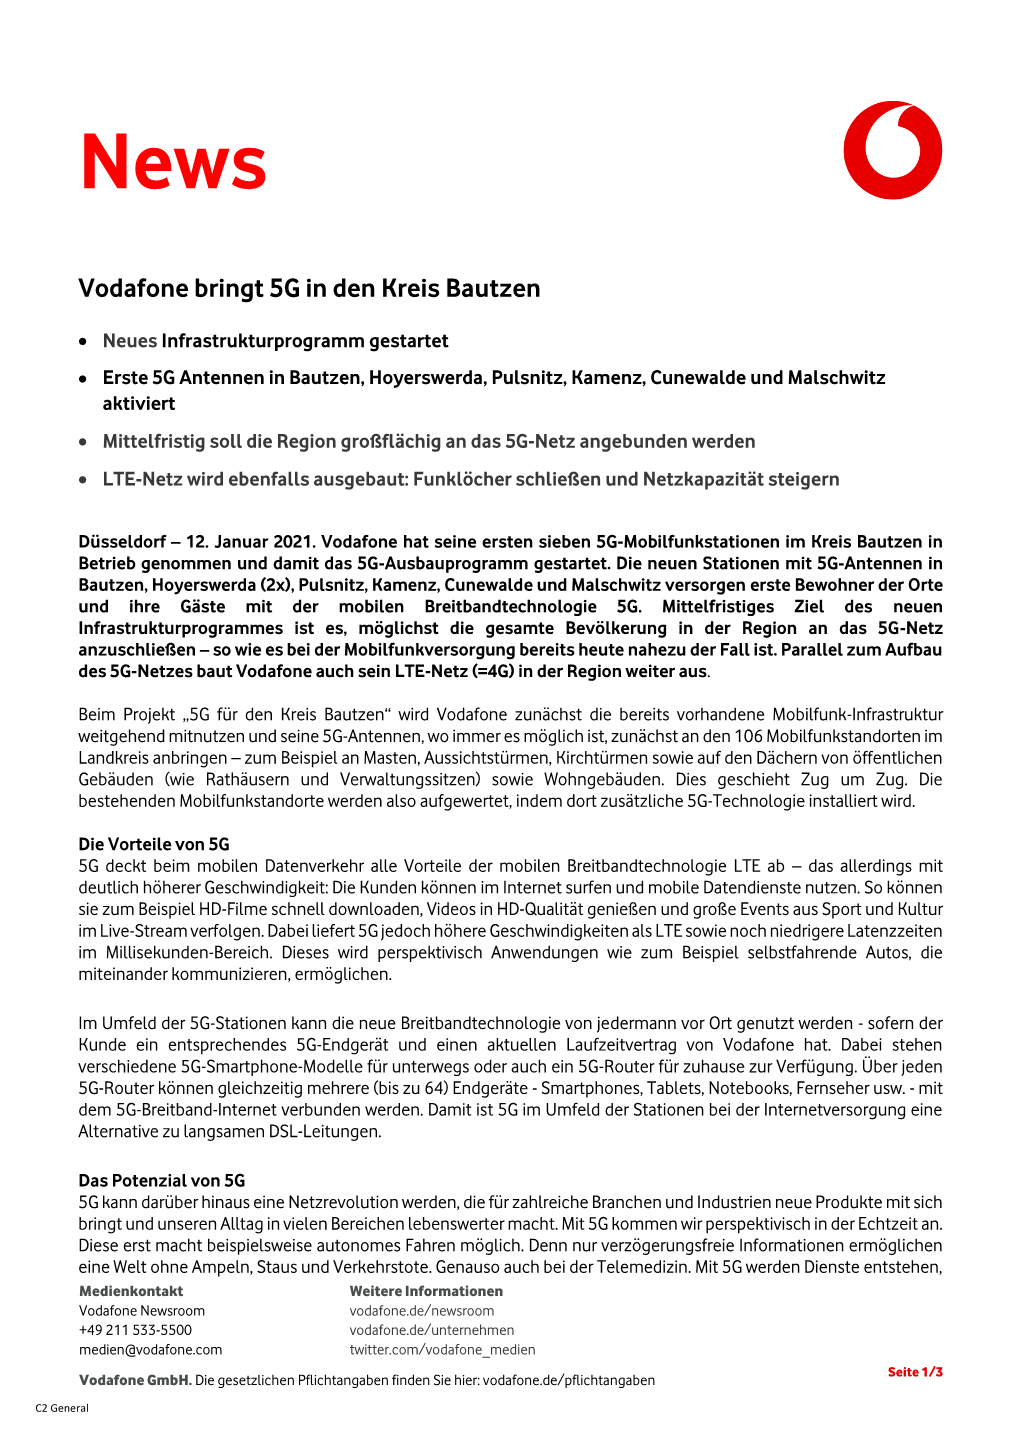 Vodafone Bringt 5G in Den Kreis Bautzen